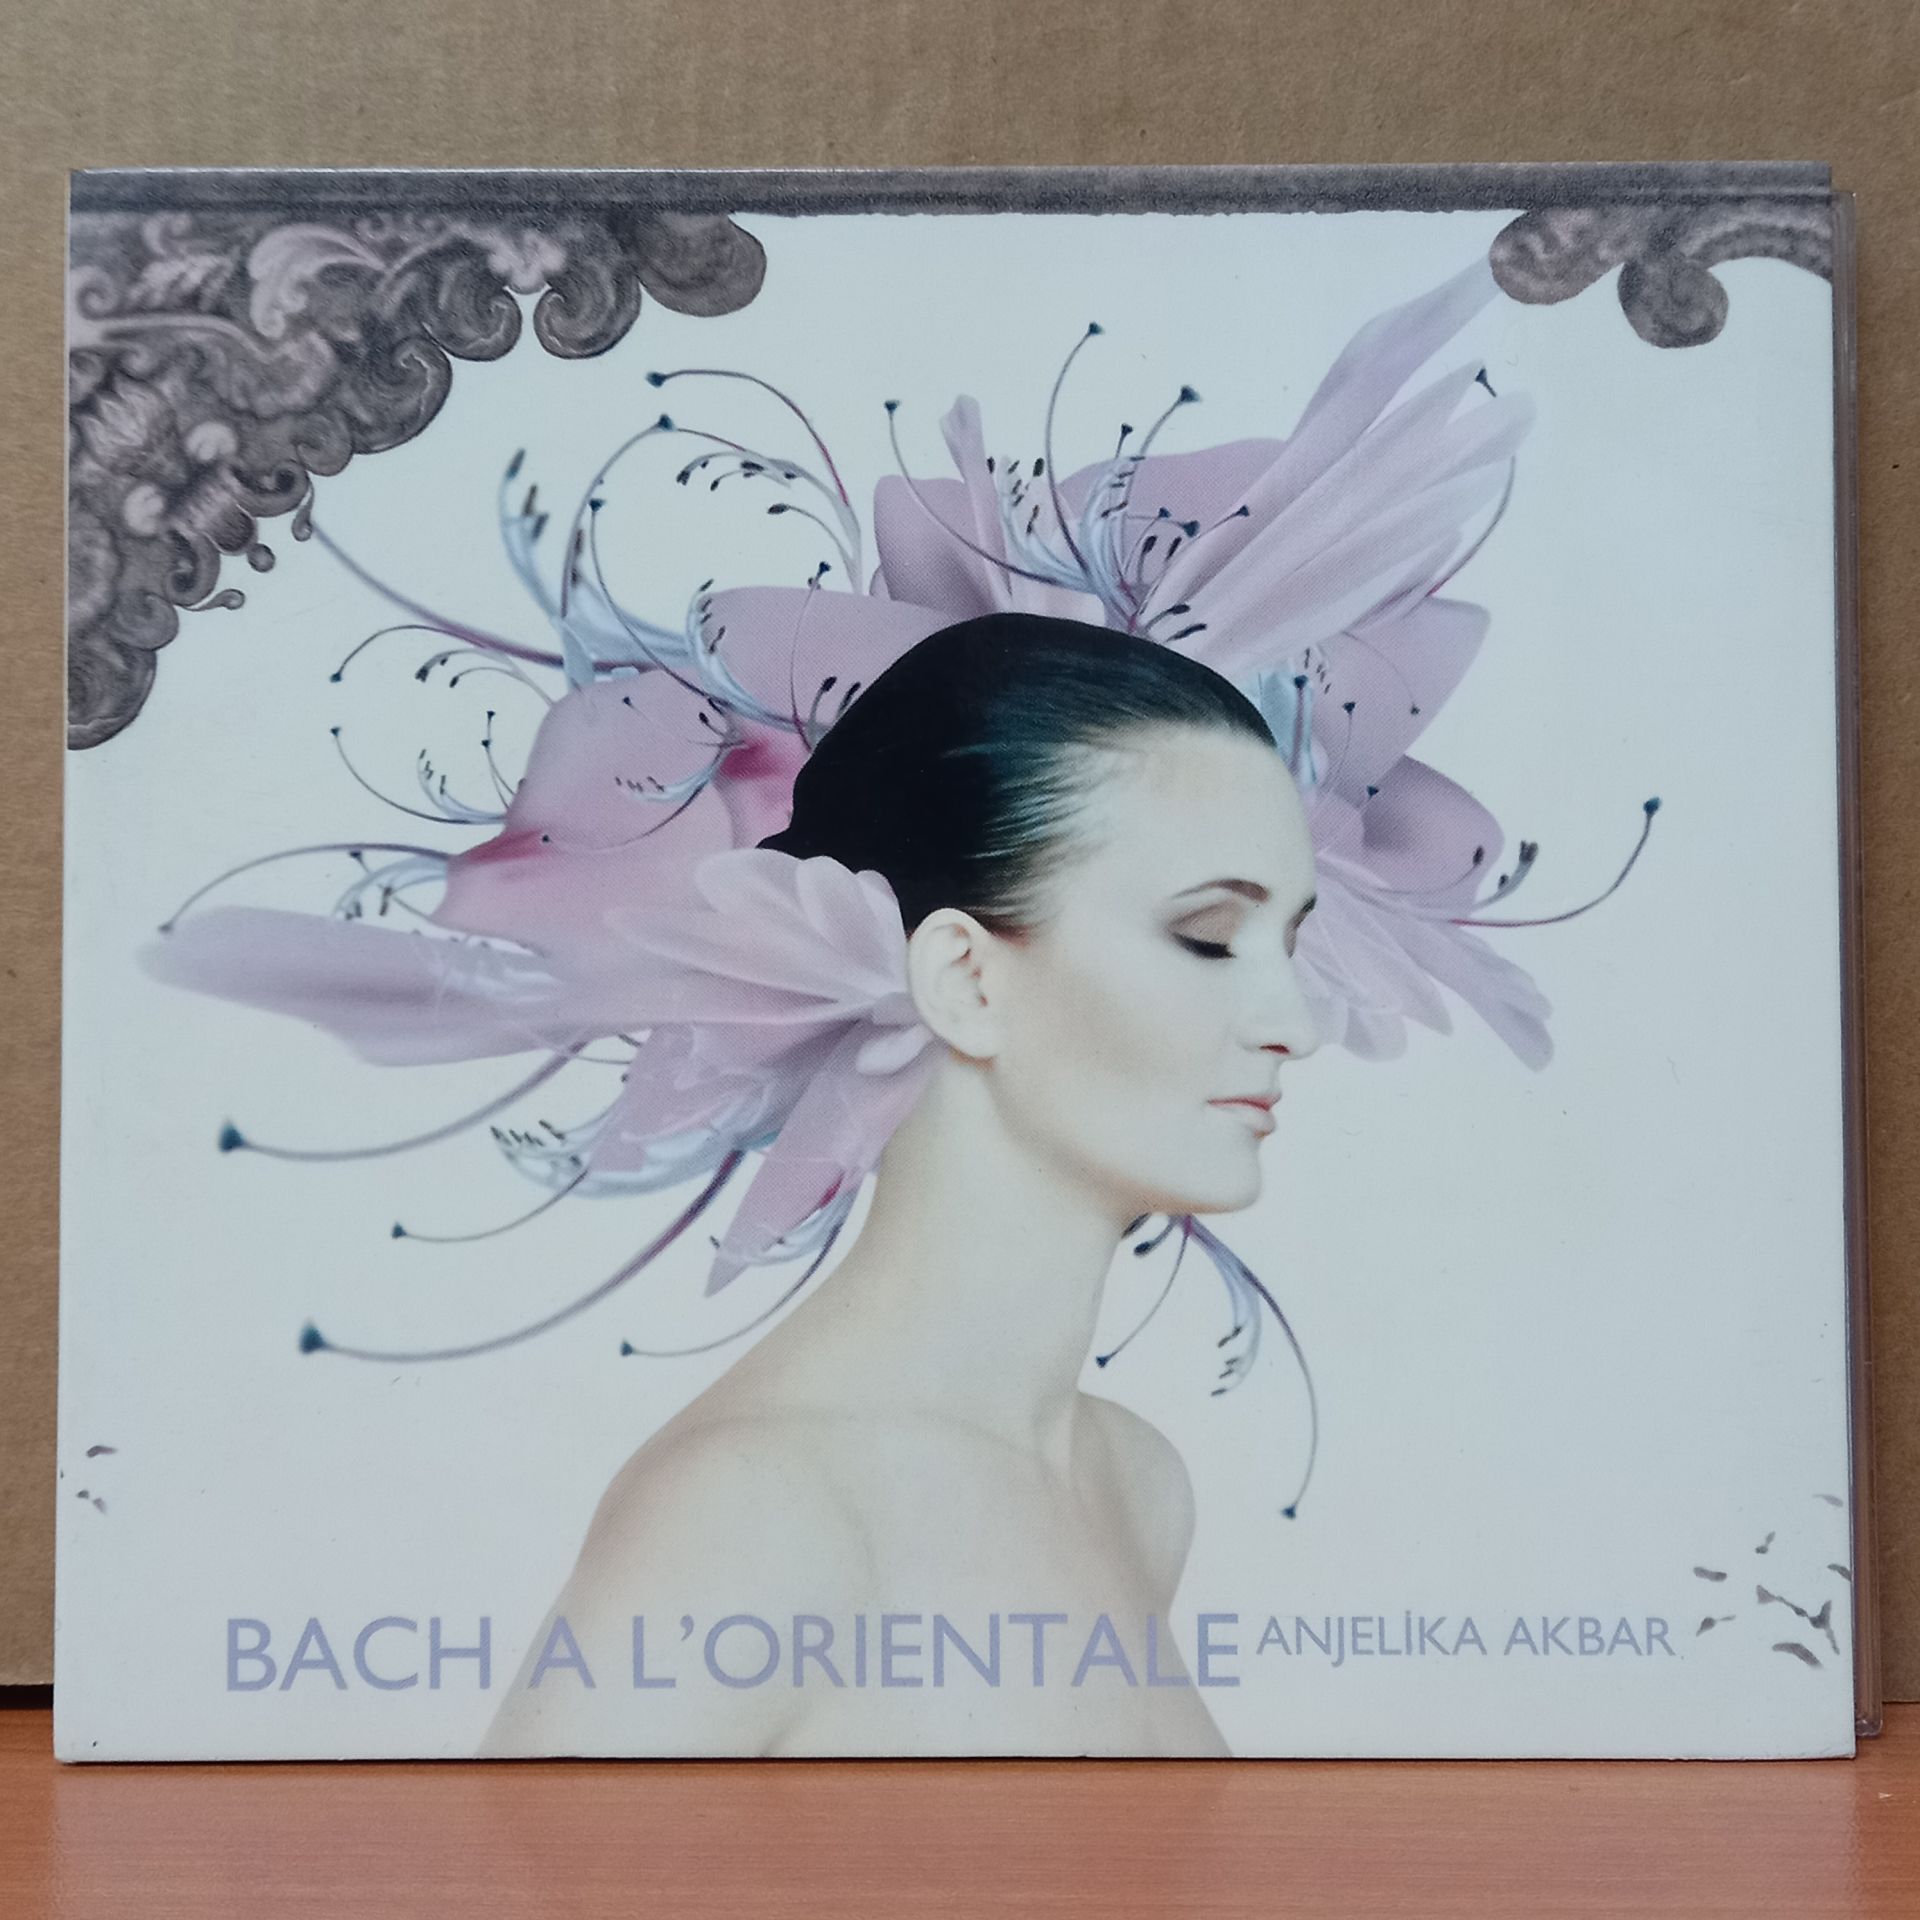 ANJELIKA AKBAR - BACH A L'ORIENTALE (2002) - CD 2.EL